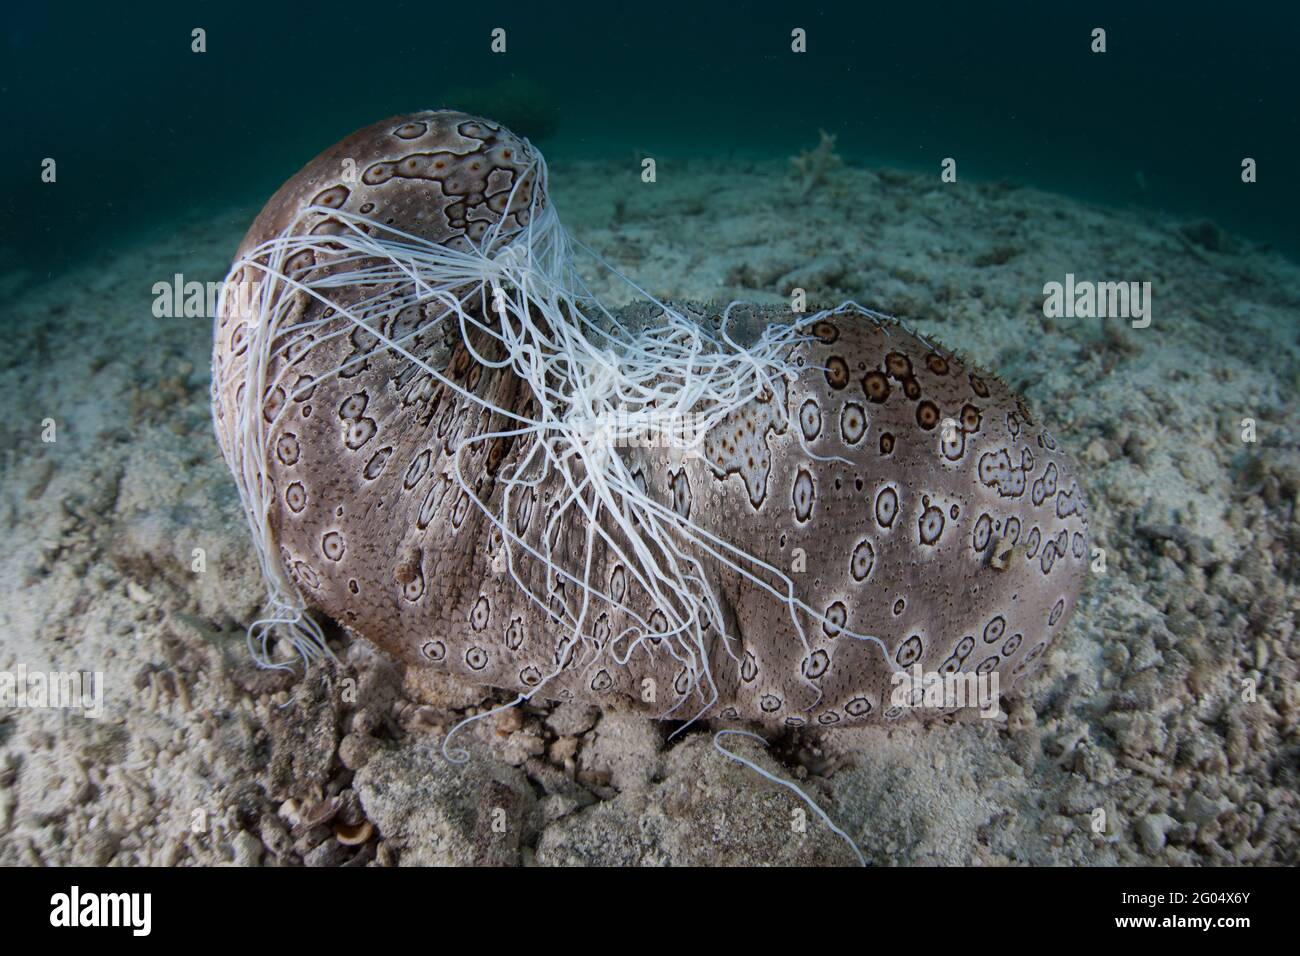 Un grande cetriolo marino, Bohadschia argus, si trova sul mare a Palau. Questo echinoderm può espellere tubuli adesivi e tossici per dissuadere i predatori. Foto Stock